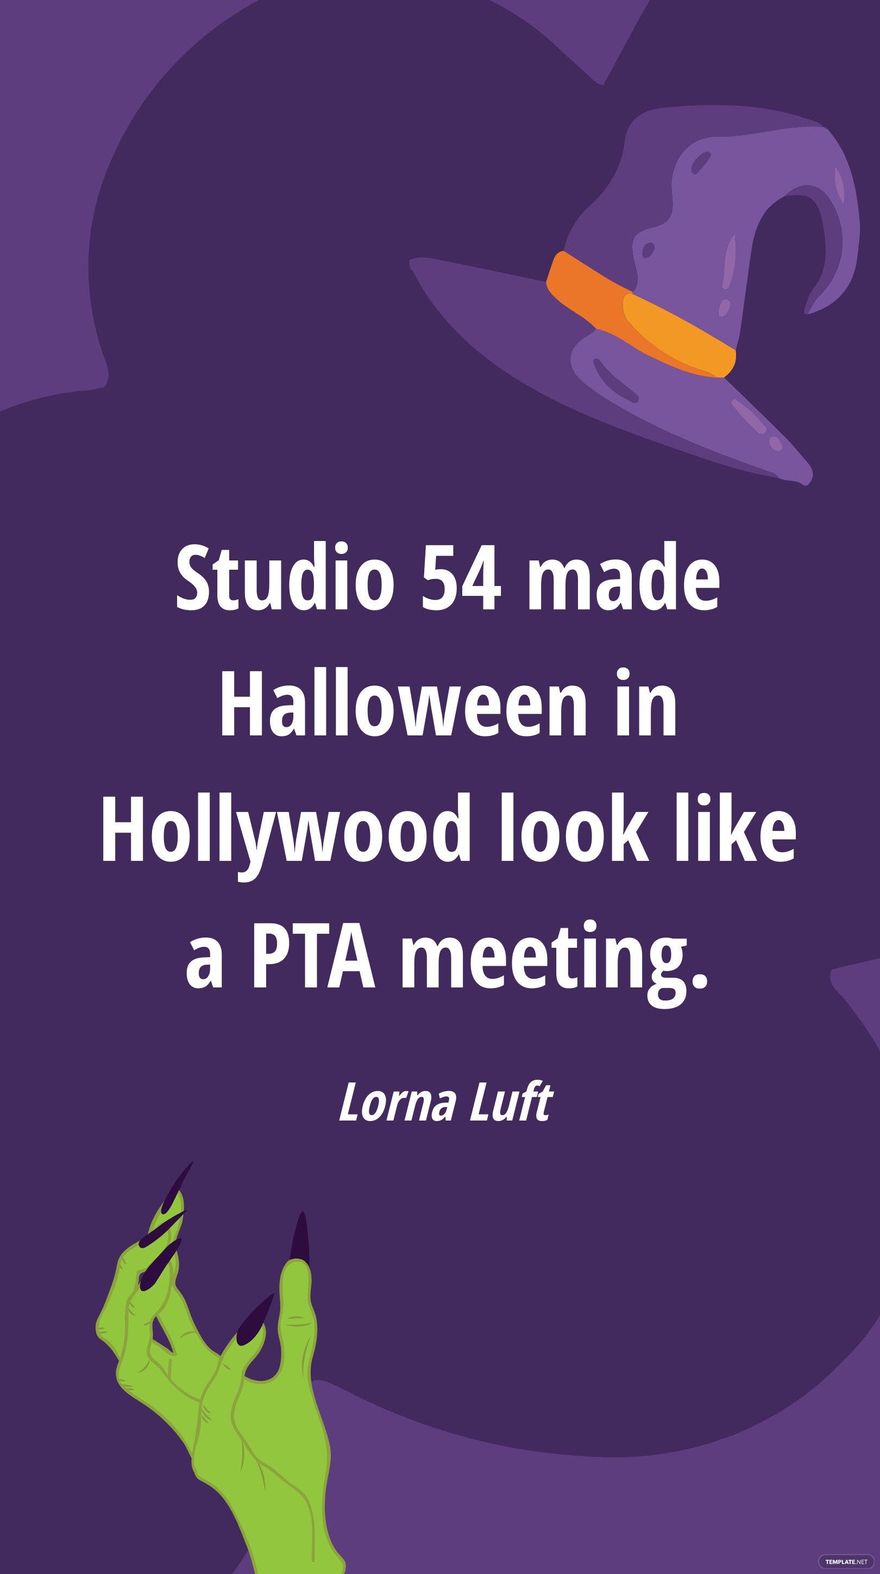 Free Lorna Luft - Studio 54 made Halloween in Hollywood look like a PTA meeting. in JPG